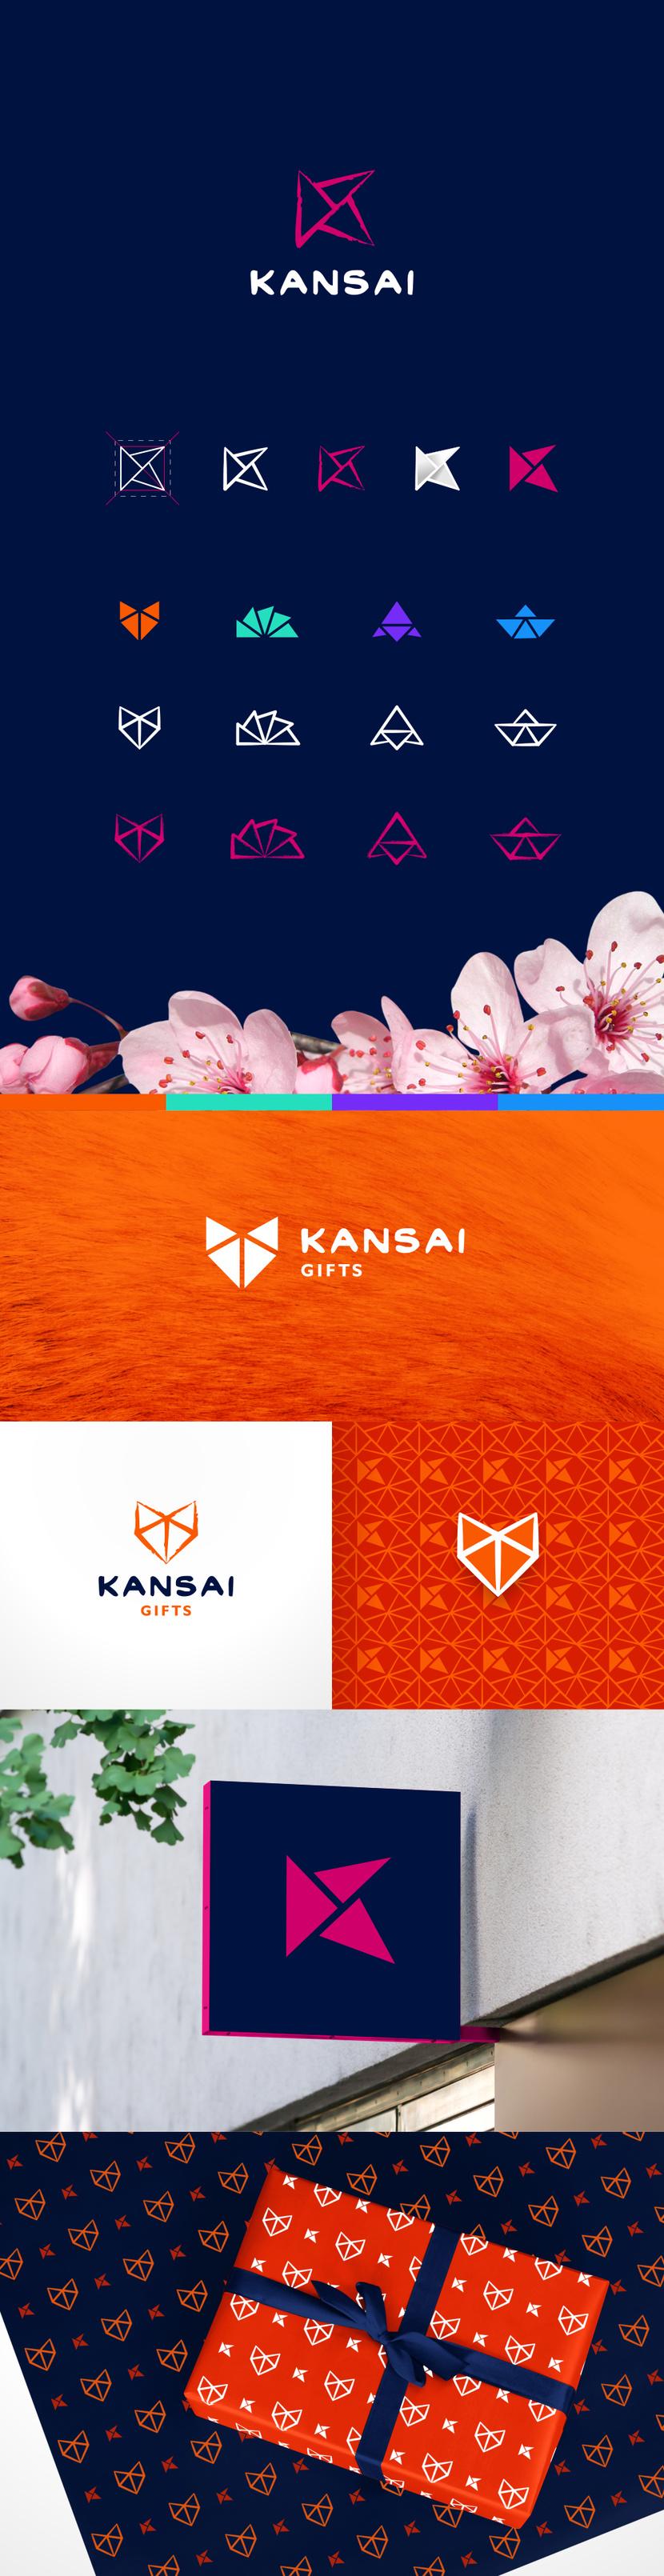 конкурс на разработку дизайна логотипа и фирменного стиля бренда KANSAI для магазинов крупных форматов  -  автор G G